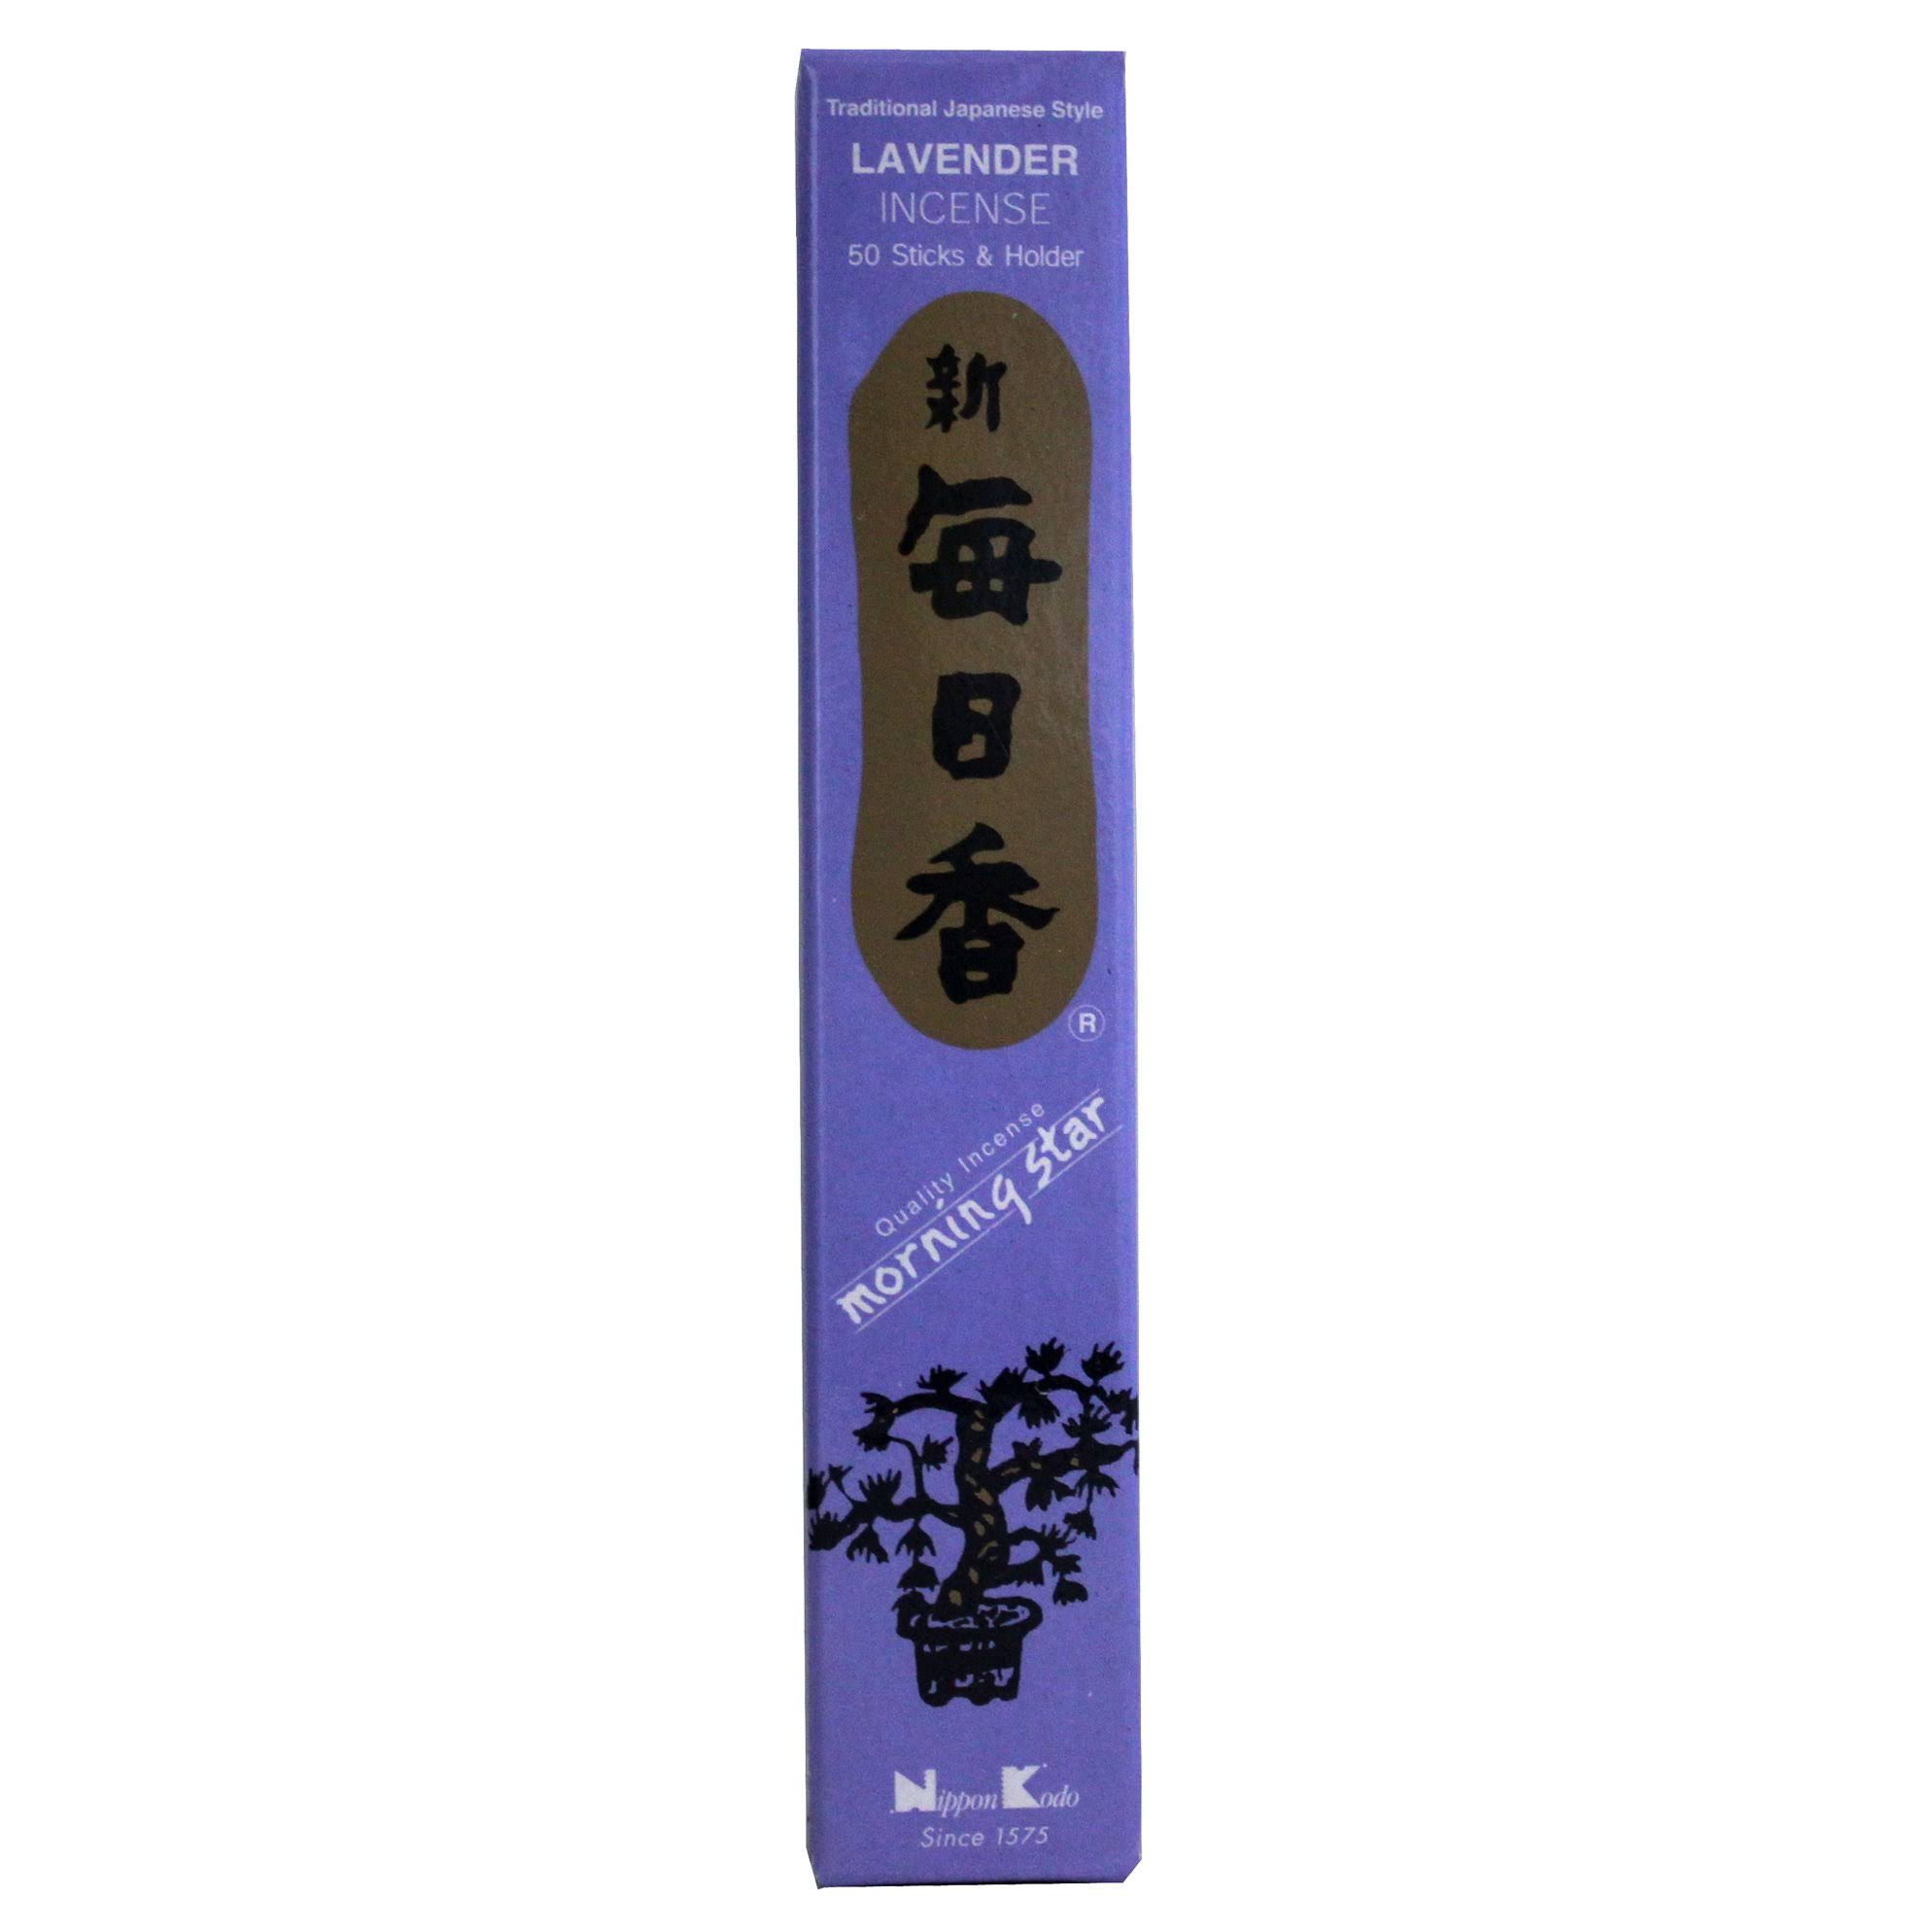 Morning Star Nippon Incense - Lavender Scent, 50 Sticks